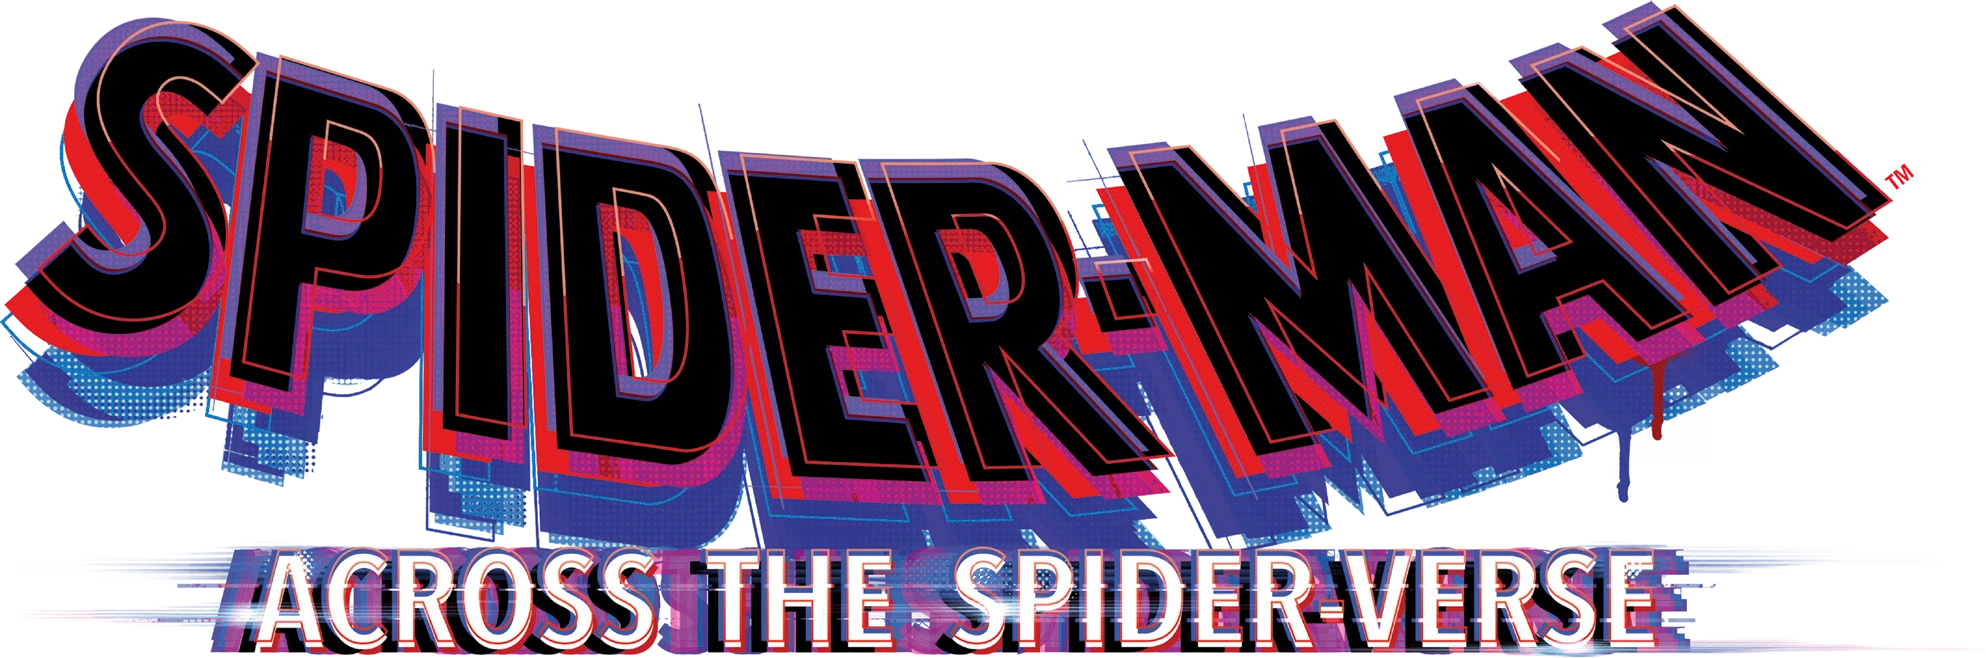 Spider-Man: Across the Spider-Verse, Spider-Man, logo, black